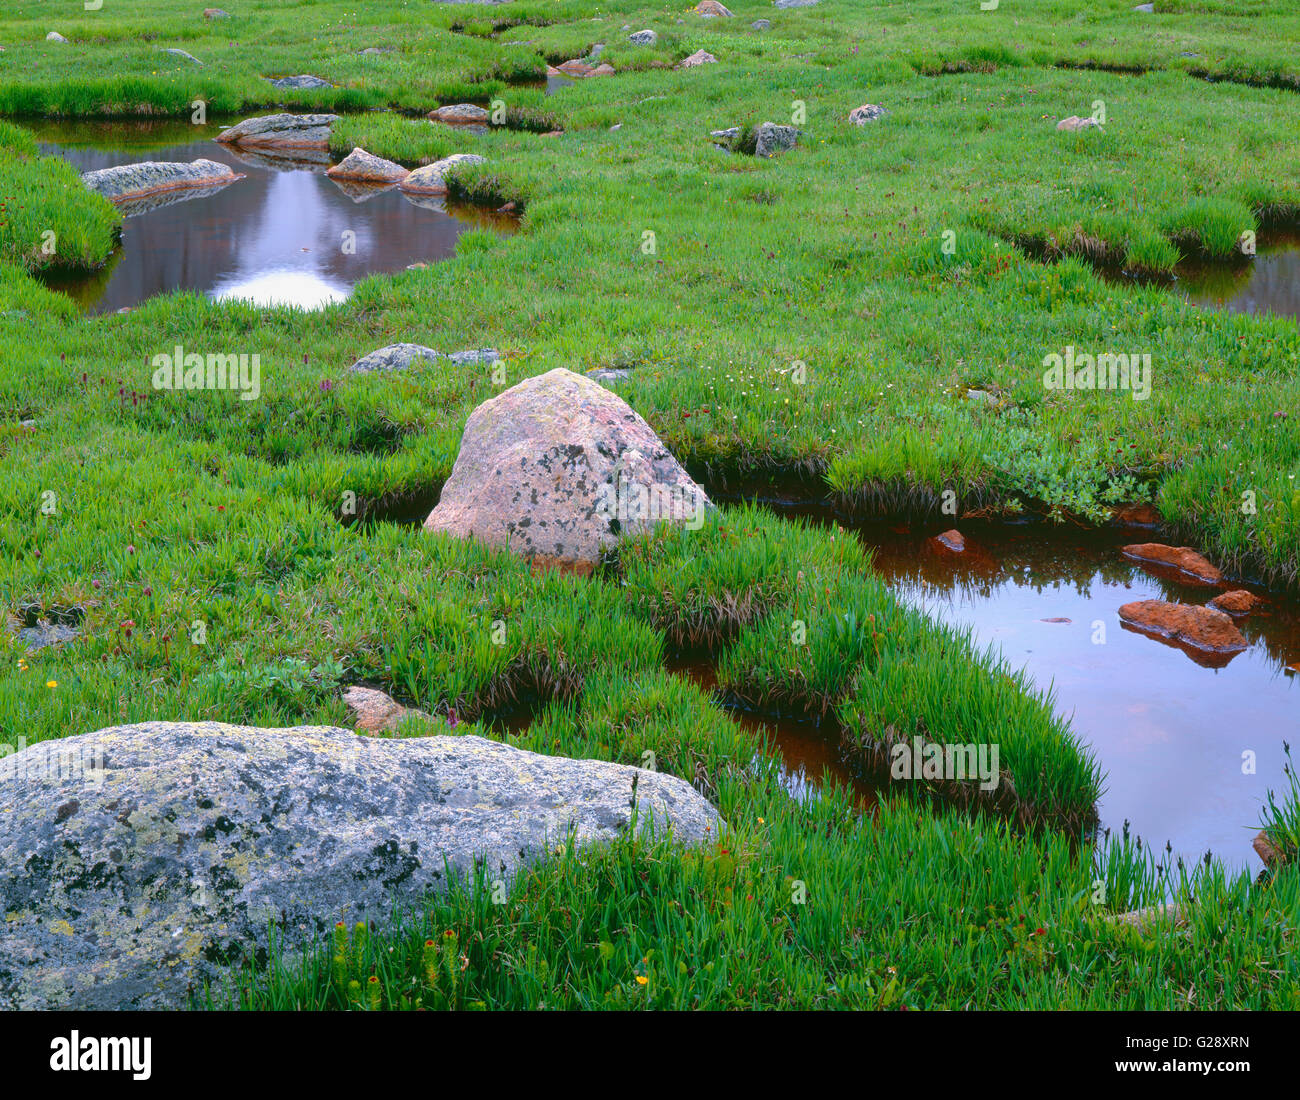 USA, Colorado, Arapaho National Forest, vert printemps graminées et carex aux côtés d'étangs de toundra et de rochers. Banque D'Images